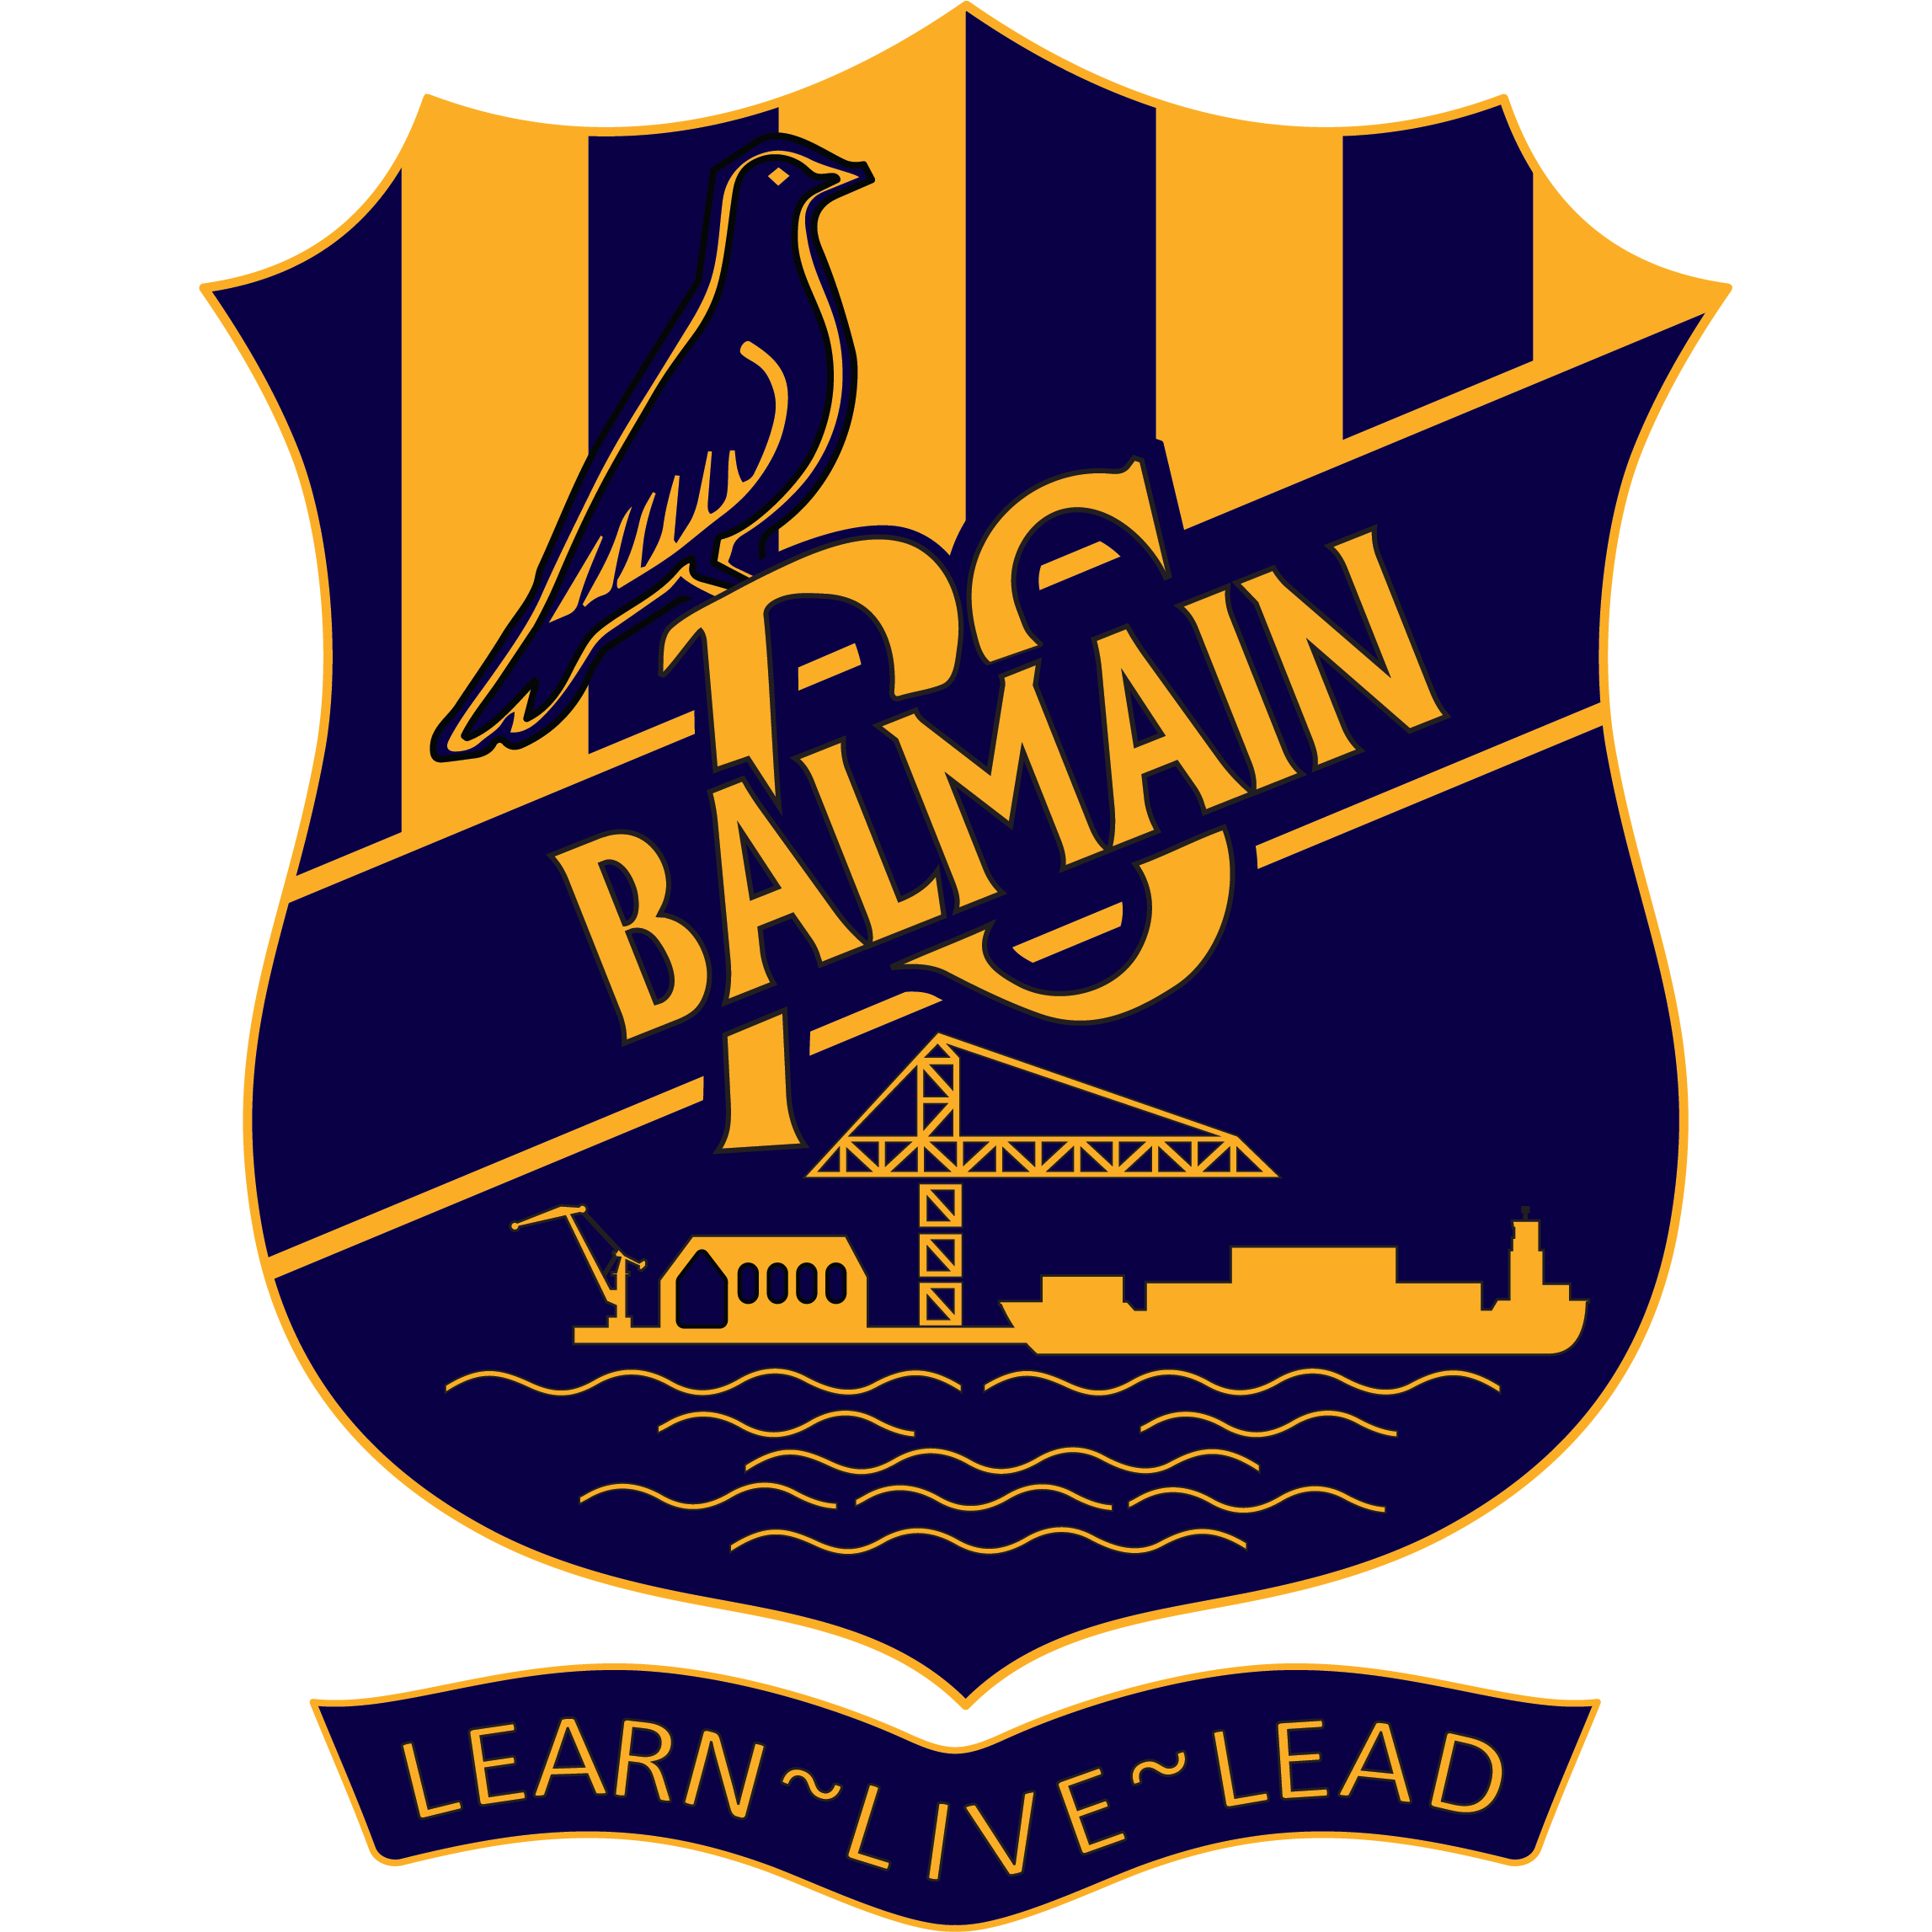 Balmain Public School